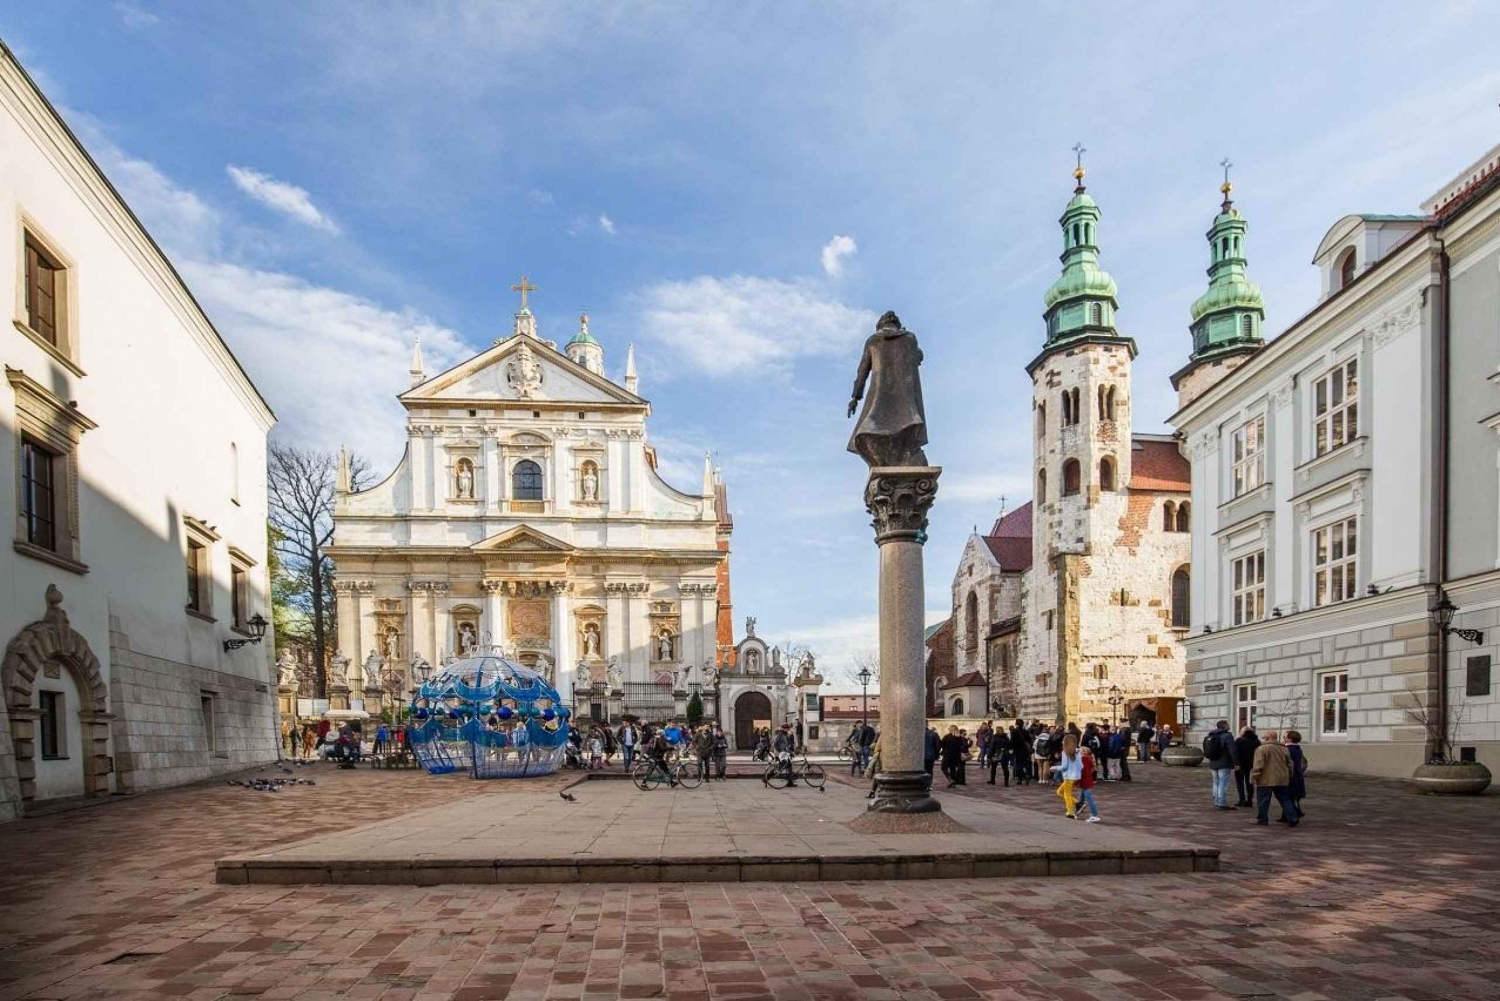 Cracovie : Château et cathédrale de Wawel, vieille ville et basilique de la ville